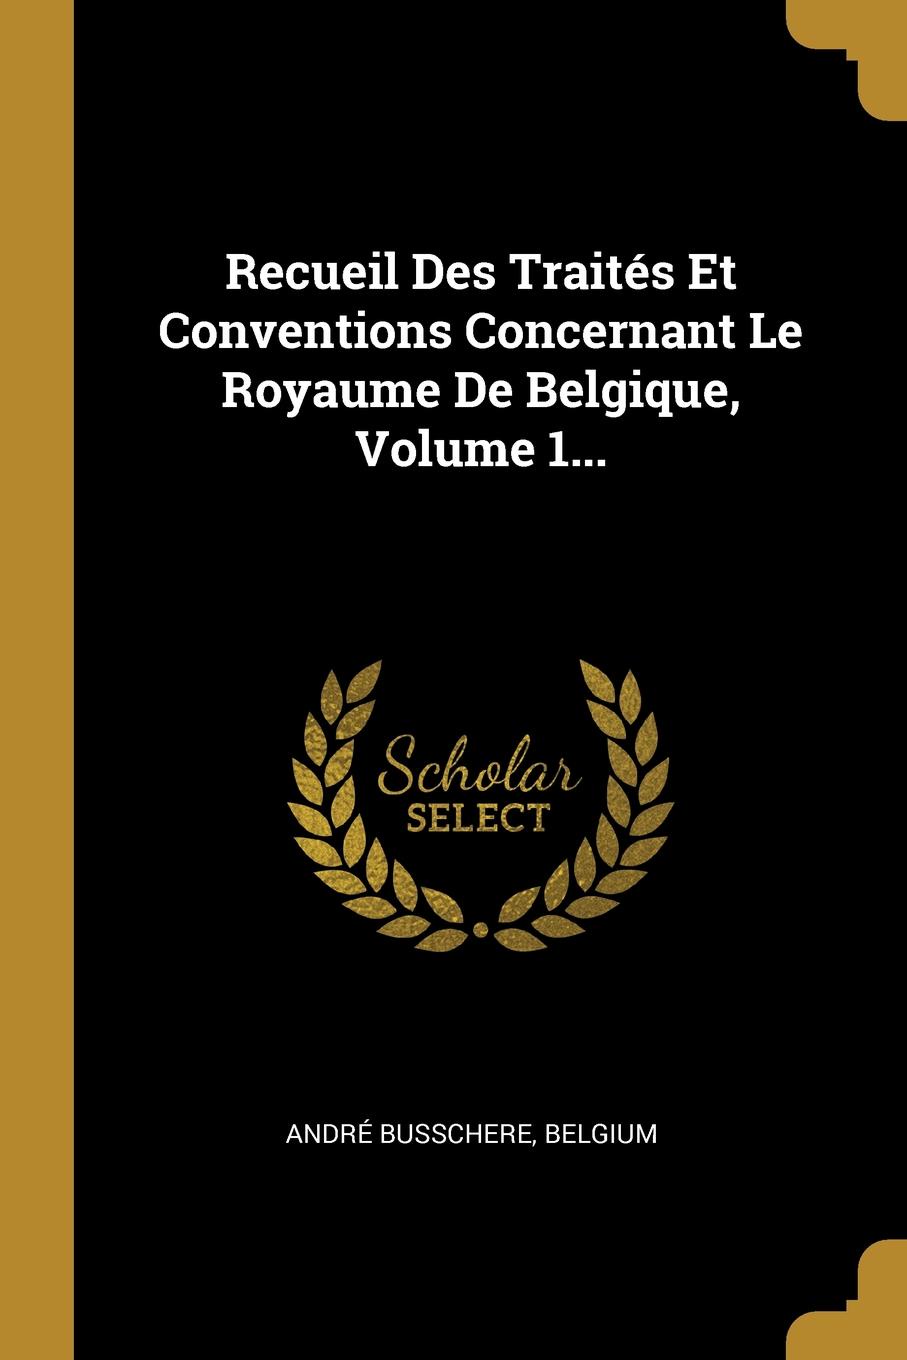 Recueil Des Traites Et Conventions Concernant Le Royaume De Belgique, Volume 1...